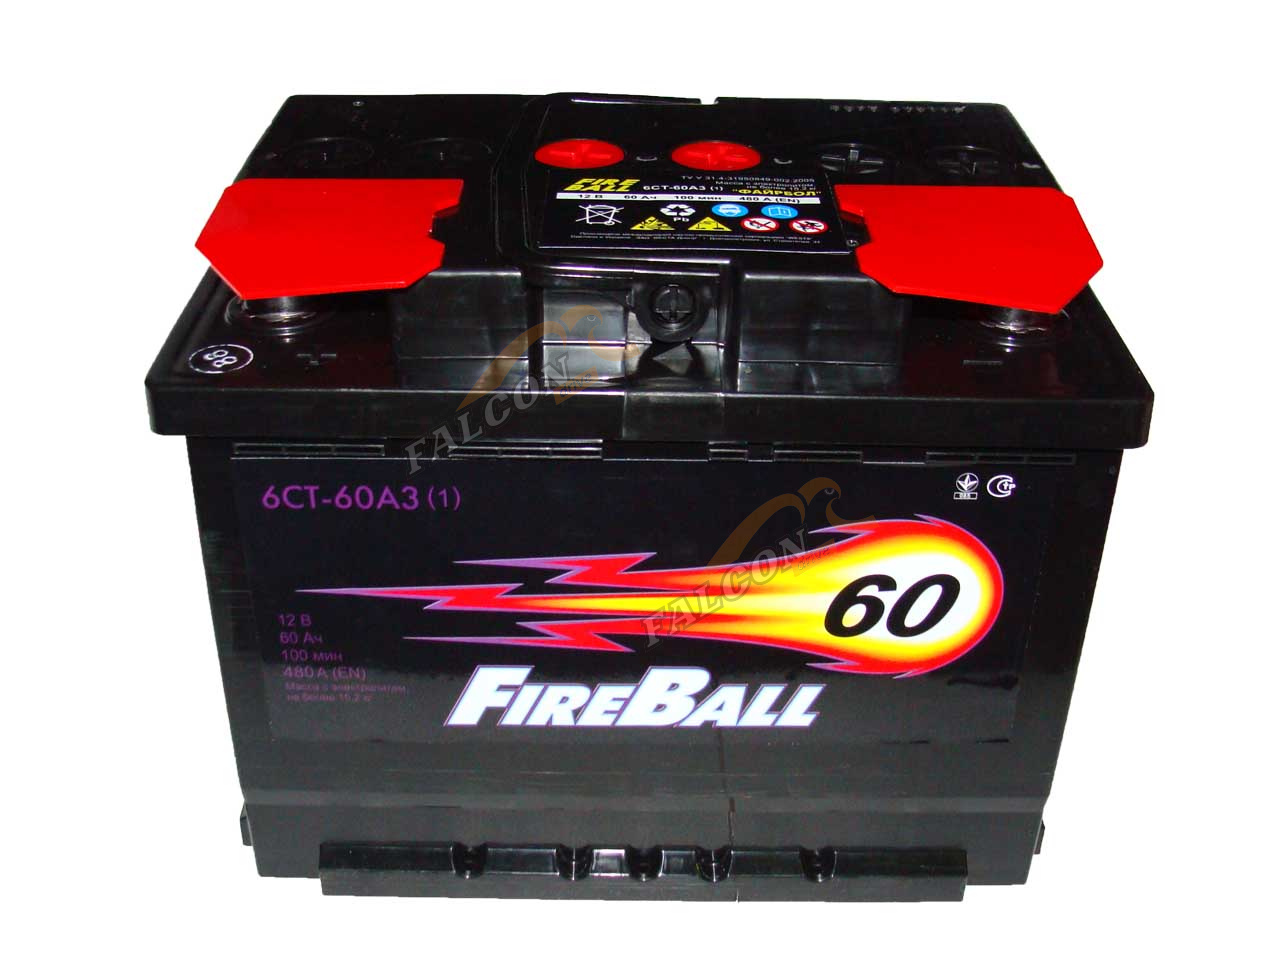 АКБ 60 Fire Ball (EN510) ДШВ 242х175х190 залит 